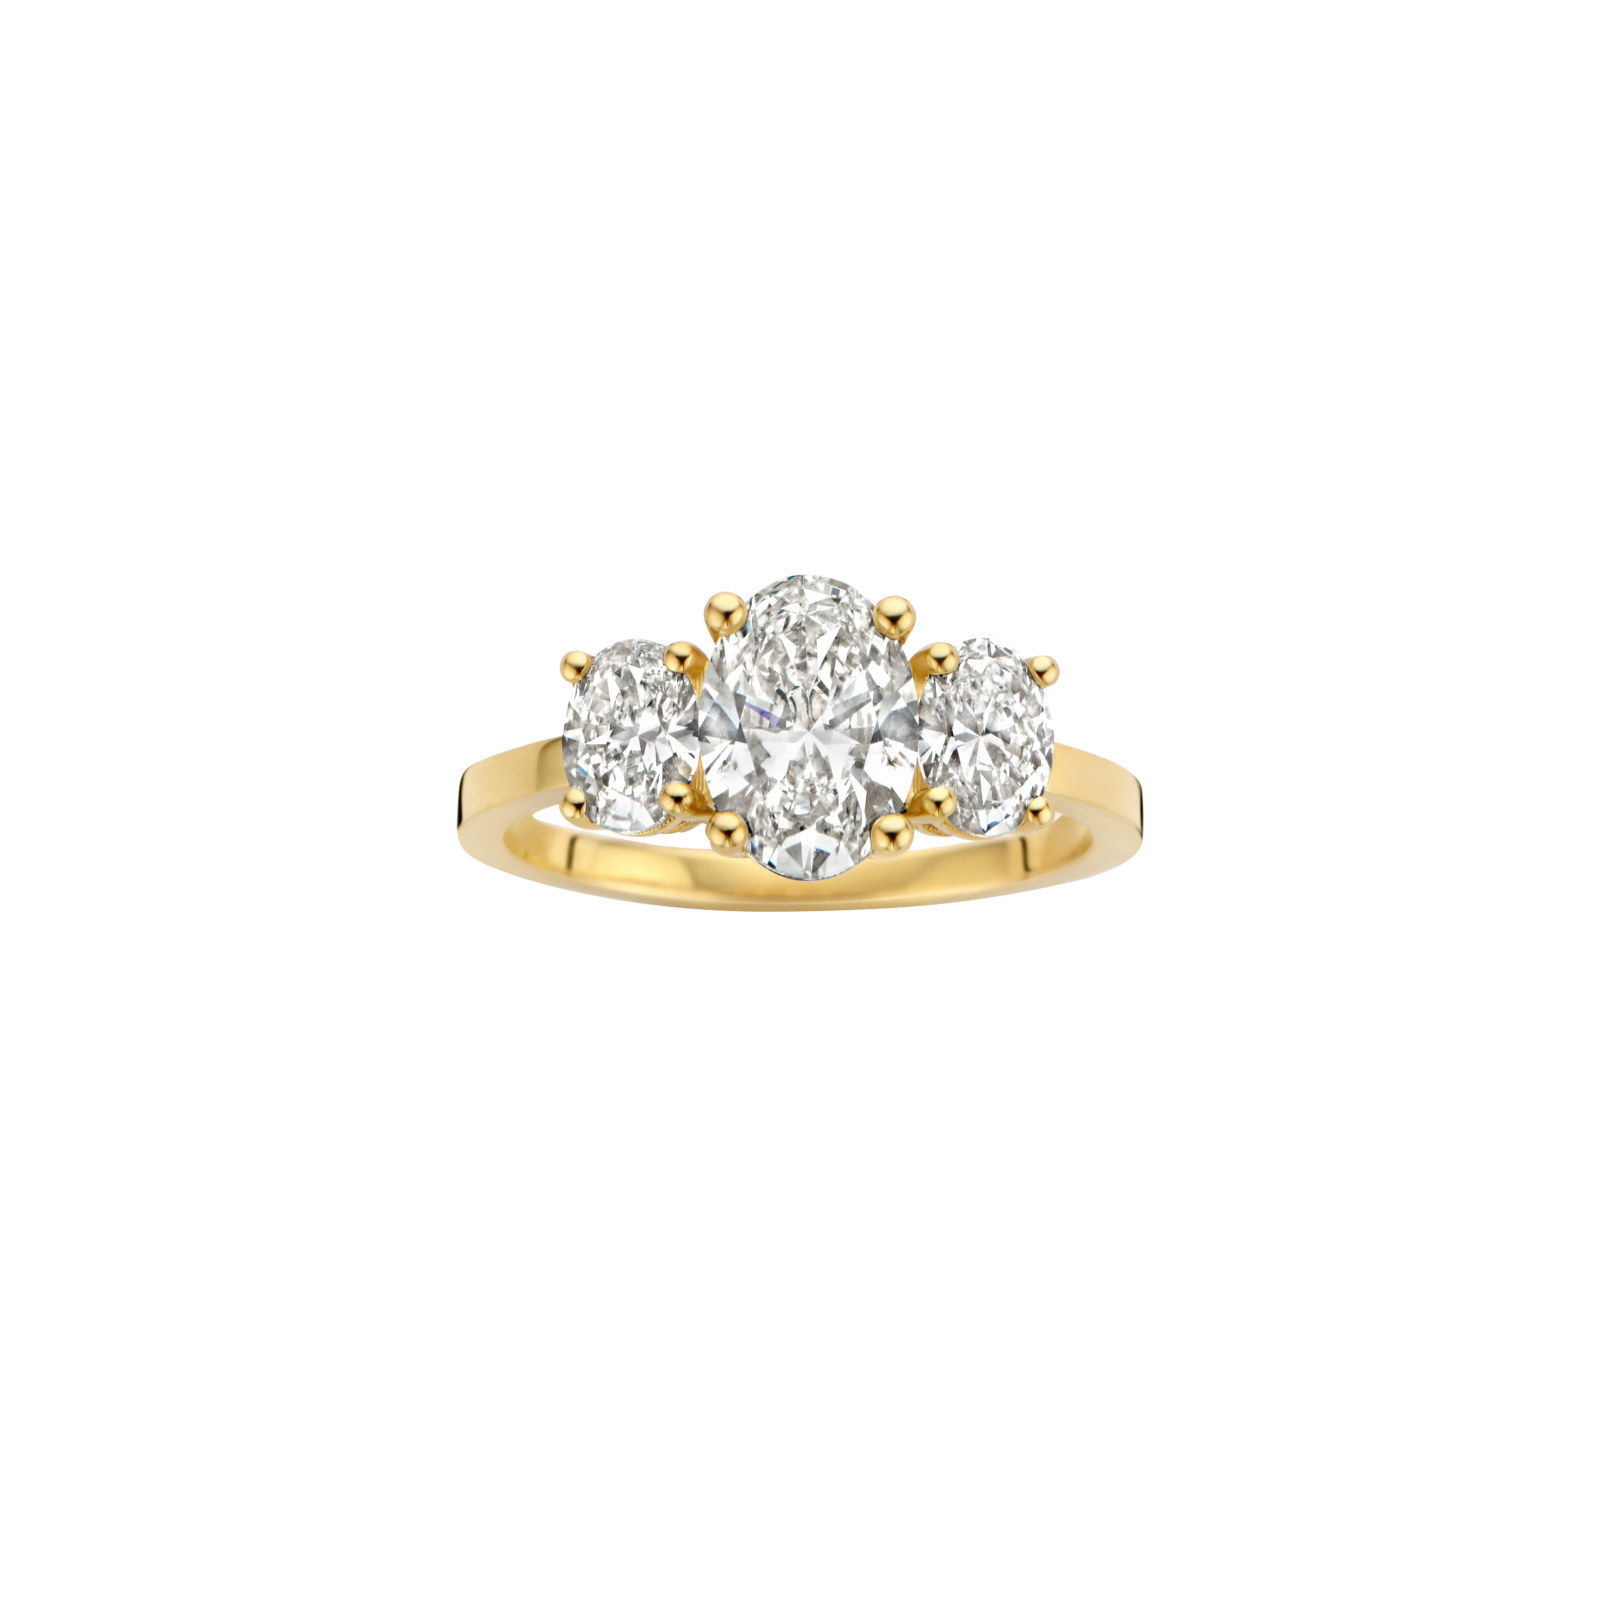 Jane engagement ring packshot - yellow gold